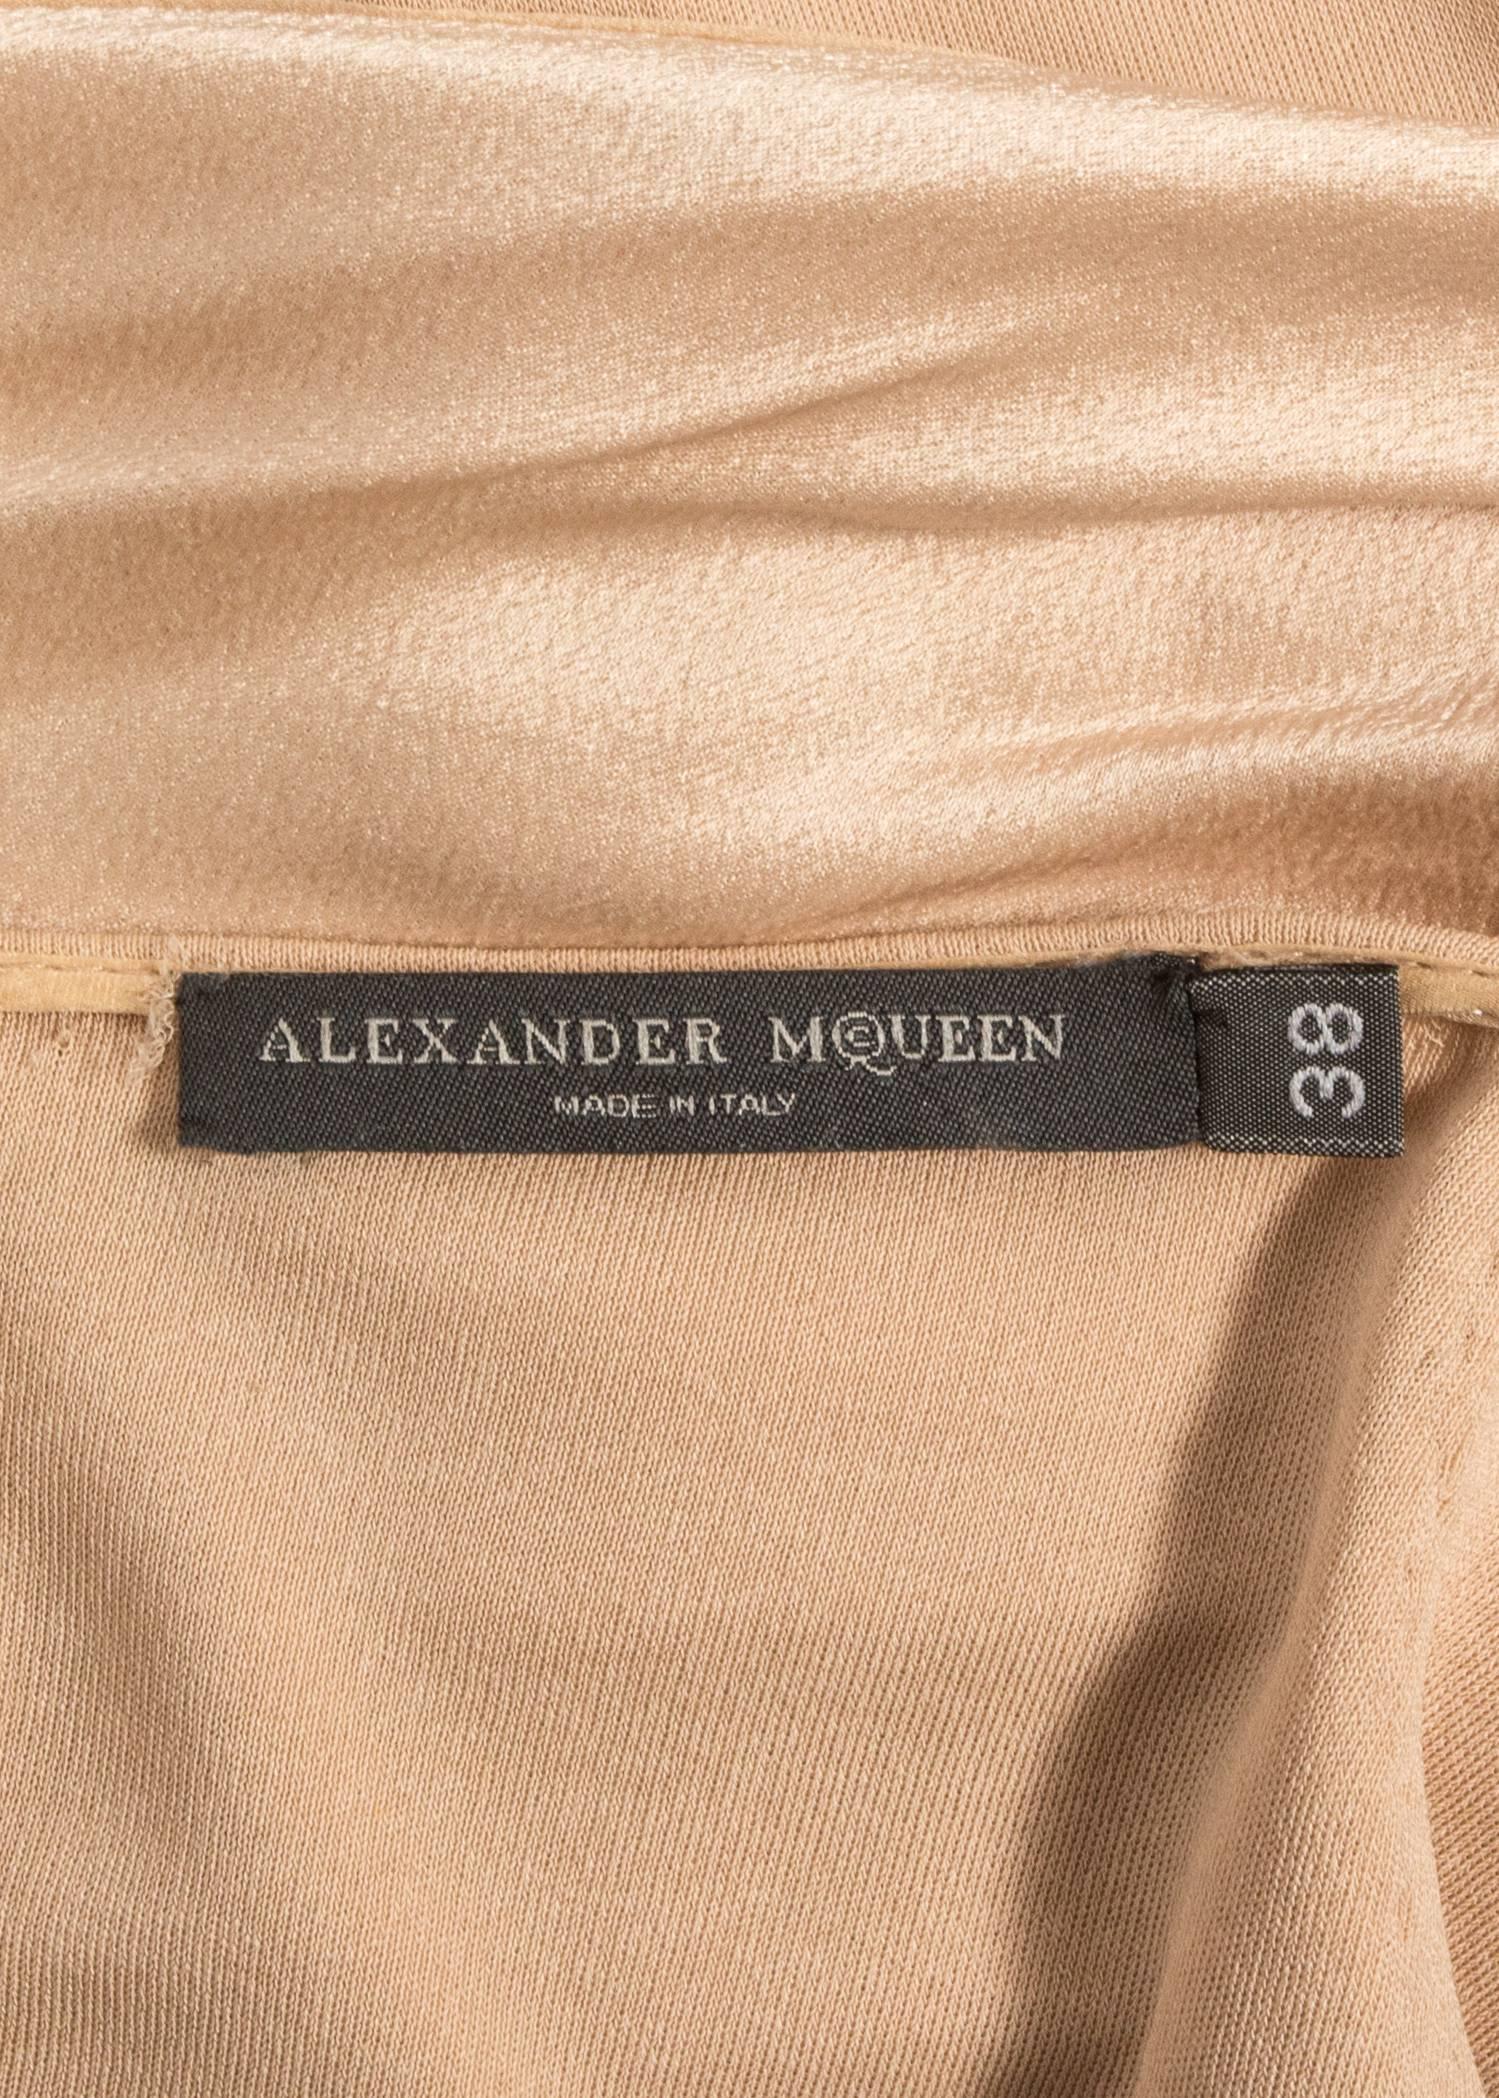 Alexander McQueen Autumn-Winter 2004 nude silk cocktail dress 3